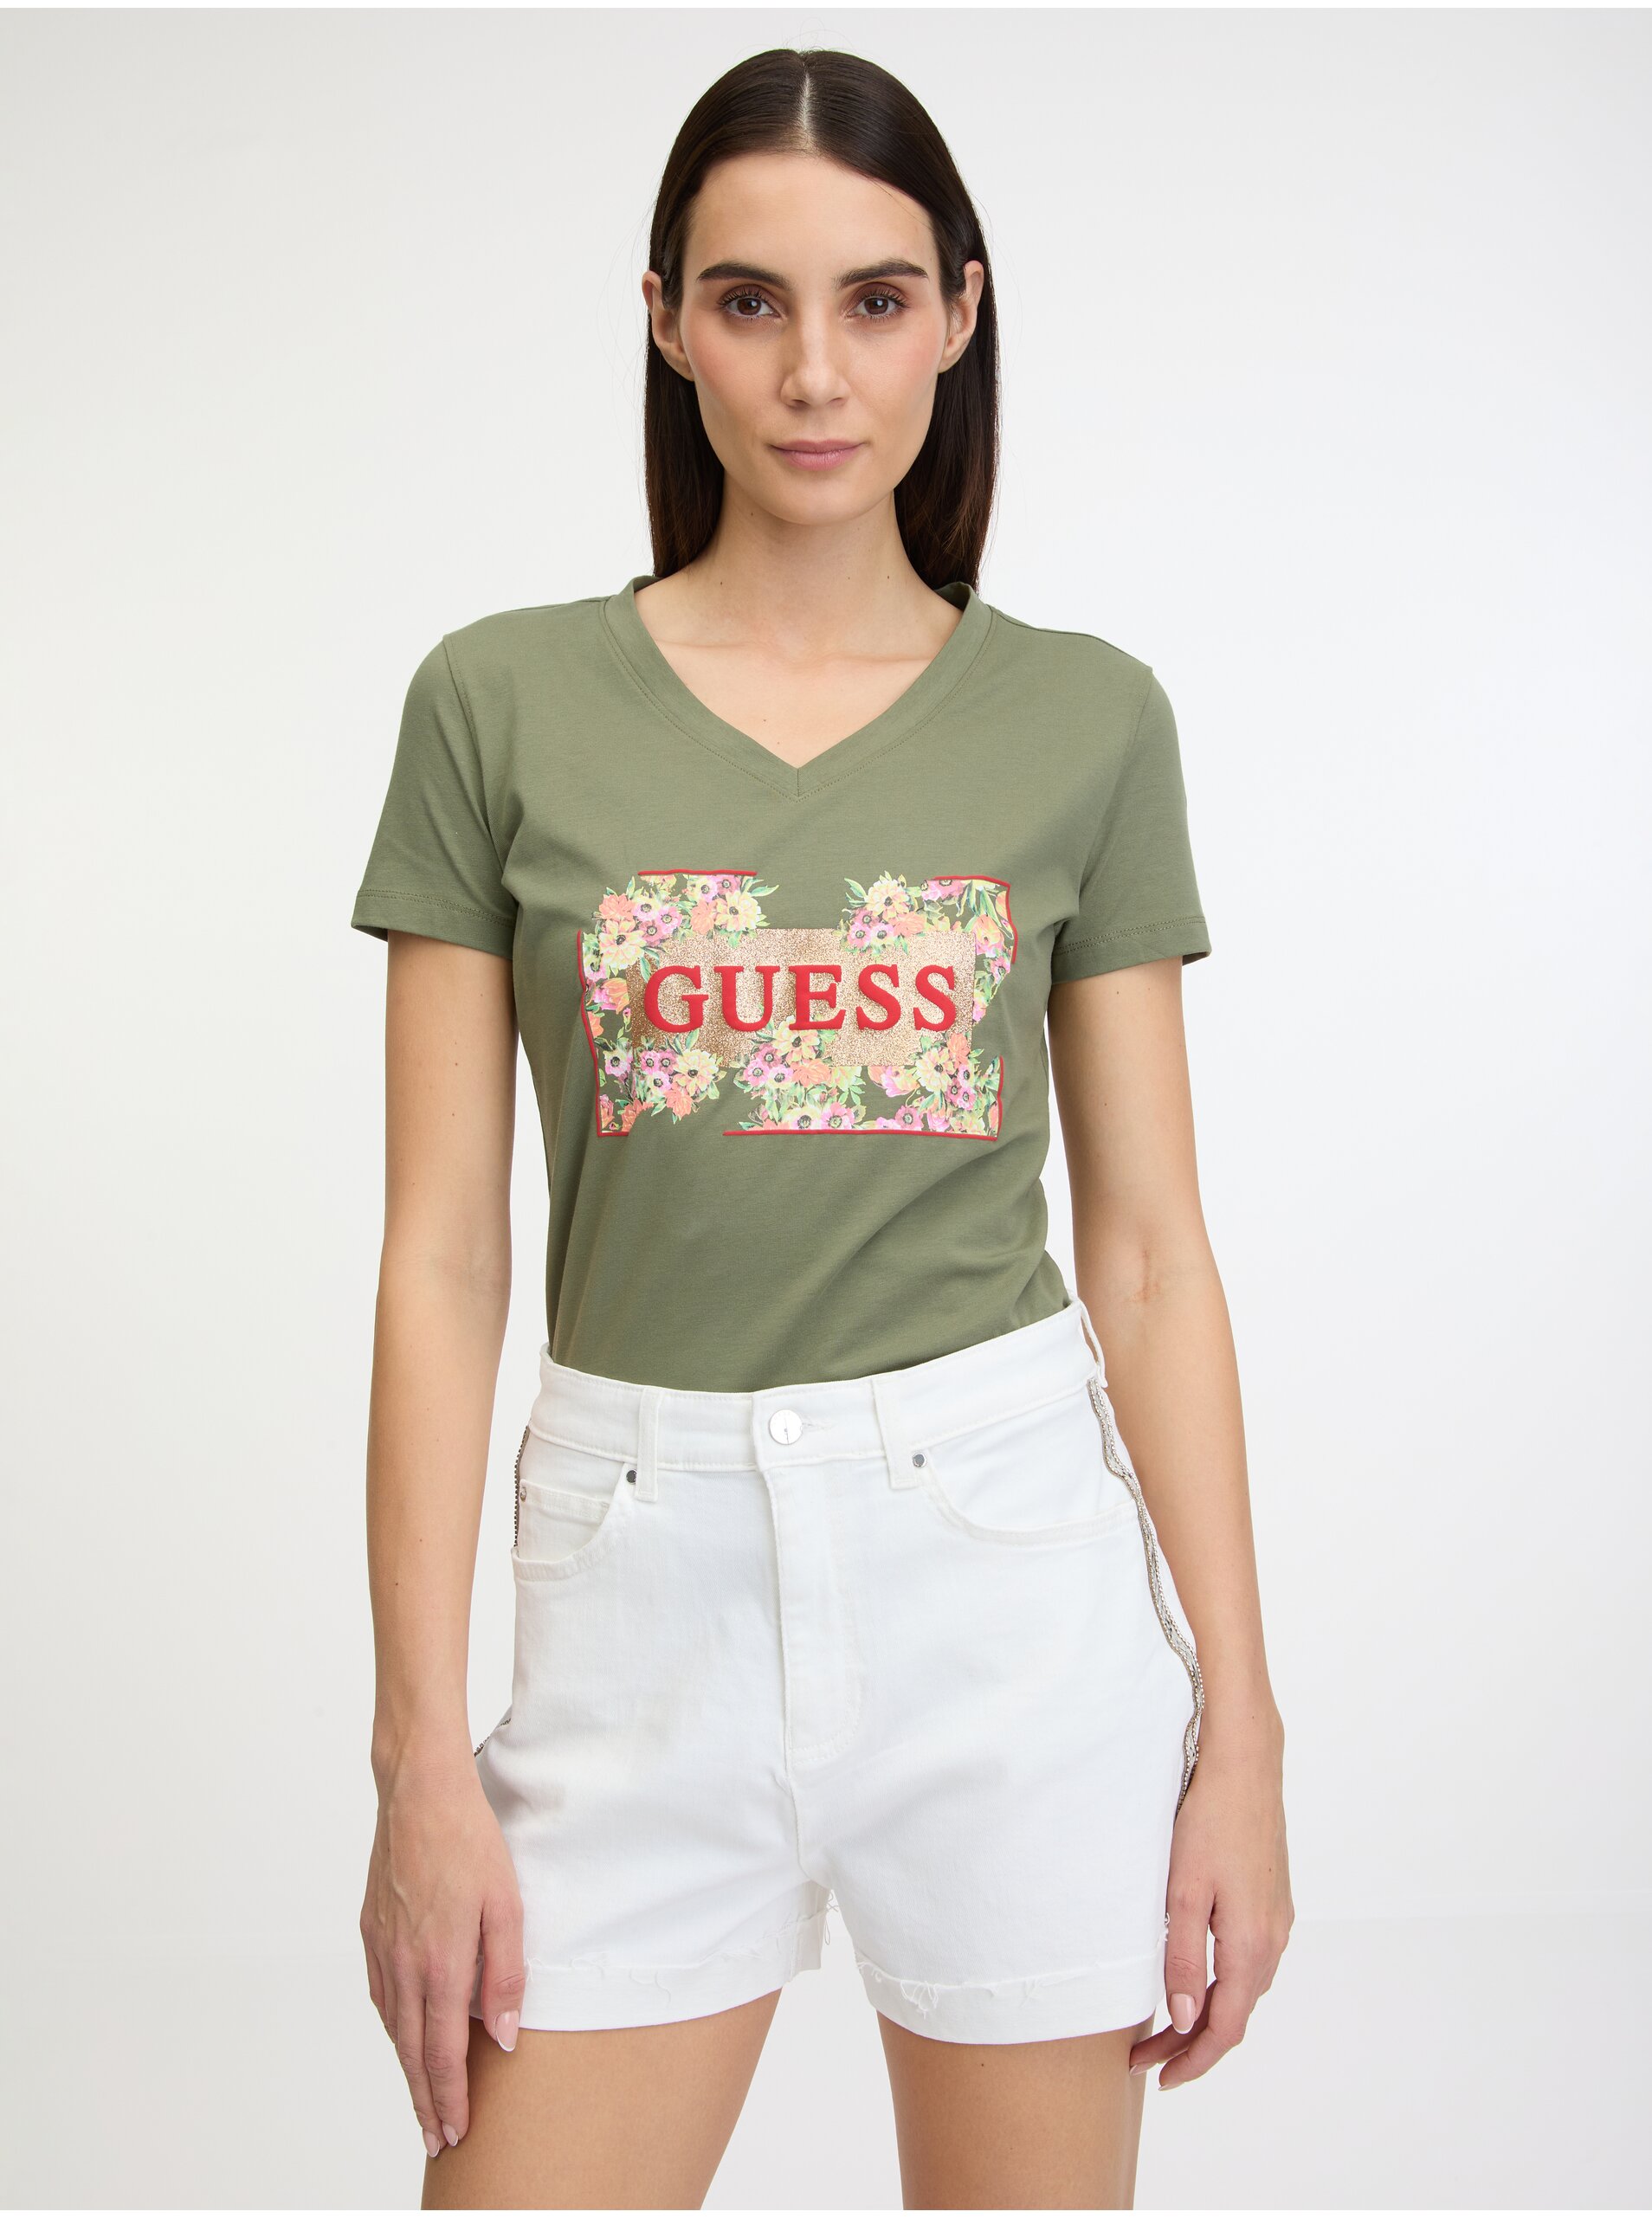 Lacno Khaki dámske tričko Guess Logo Flowers